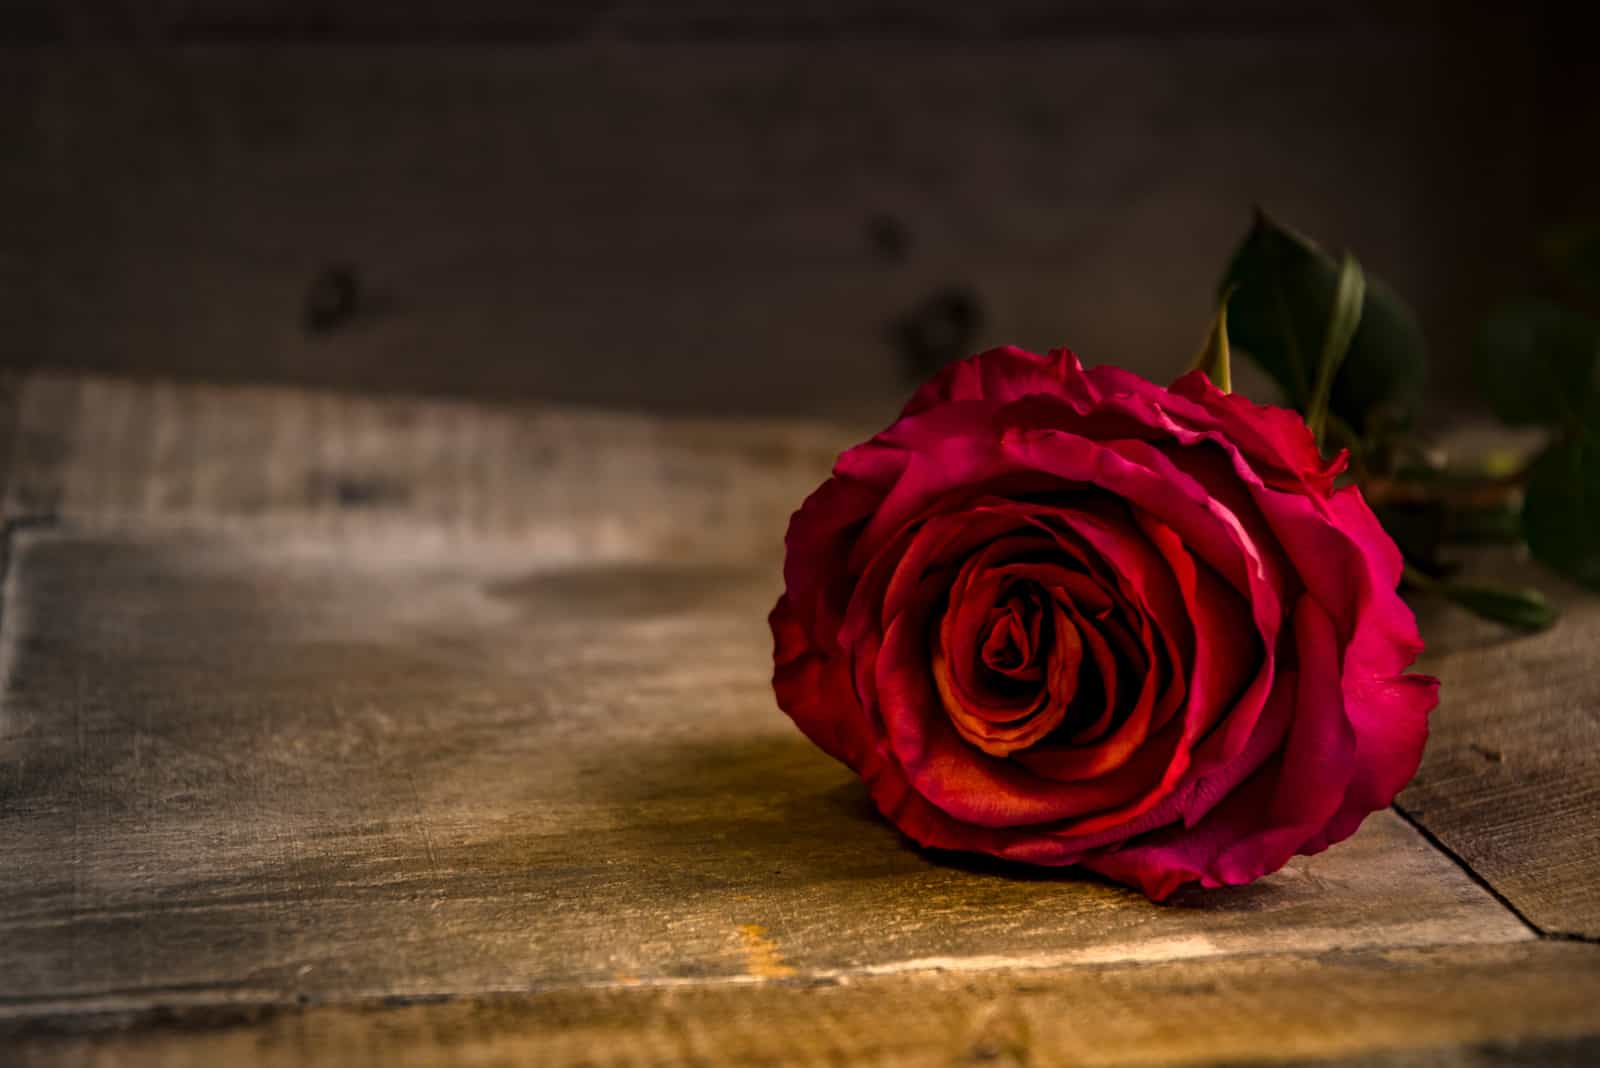 rosa rossa sul tavolo